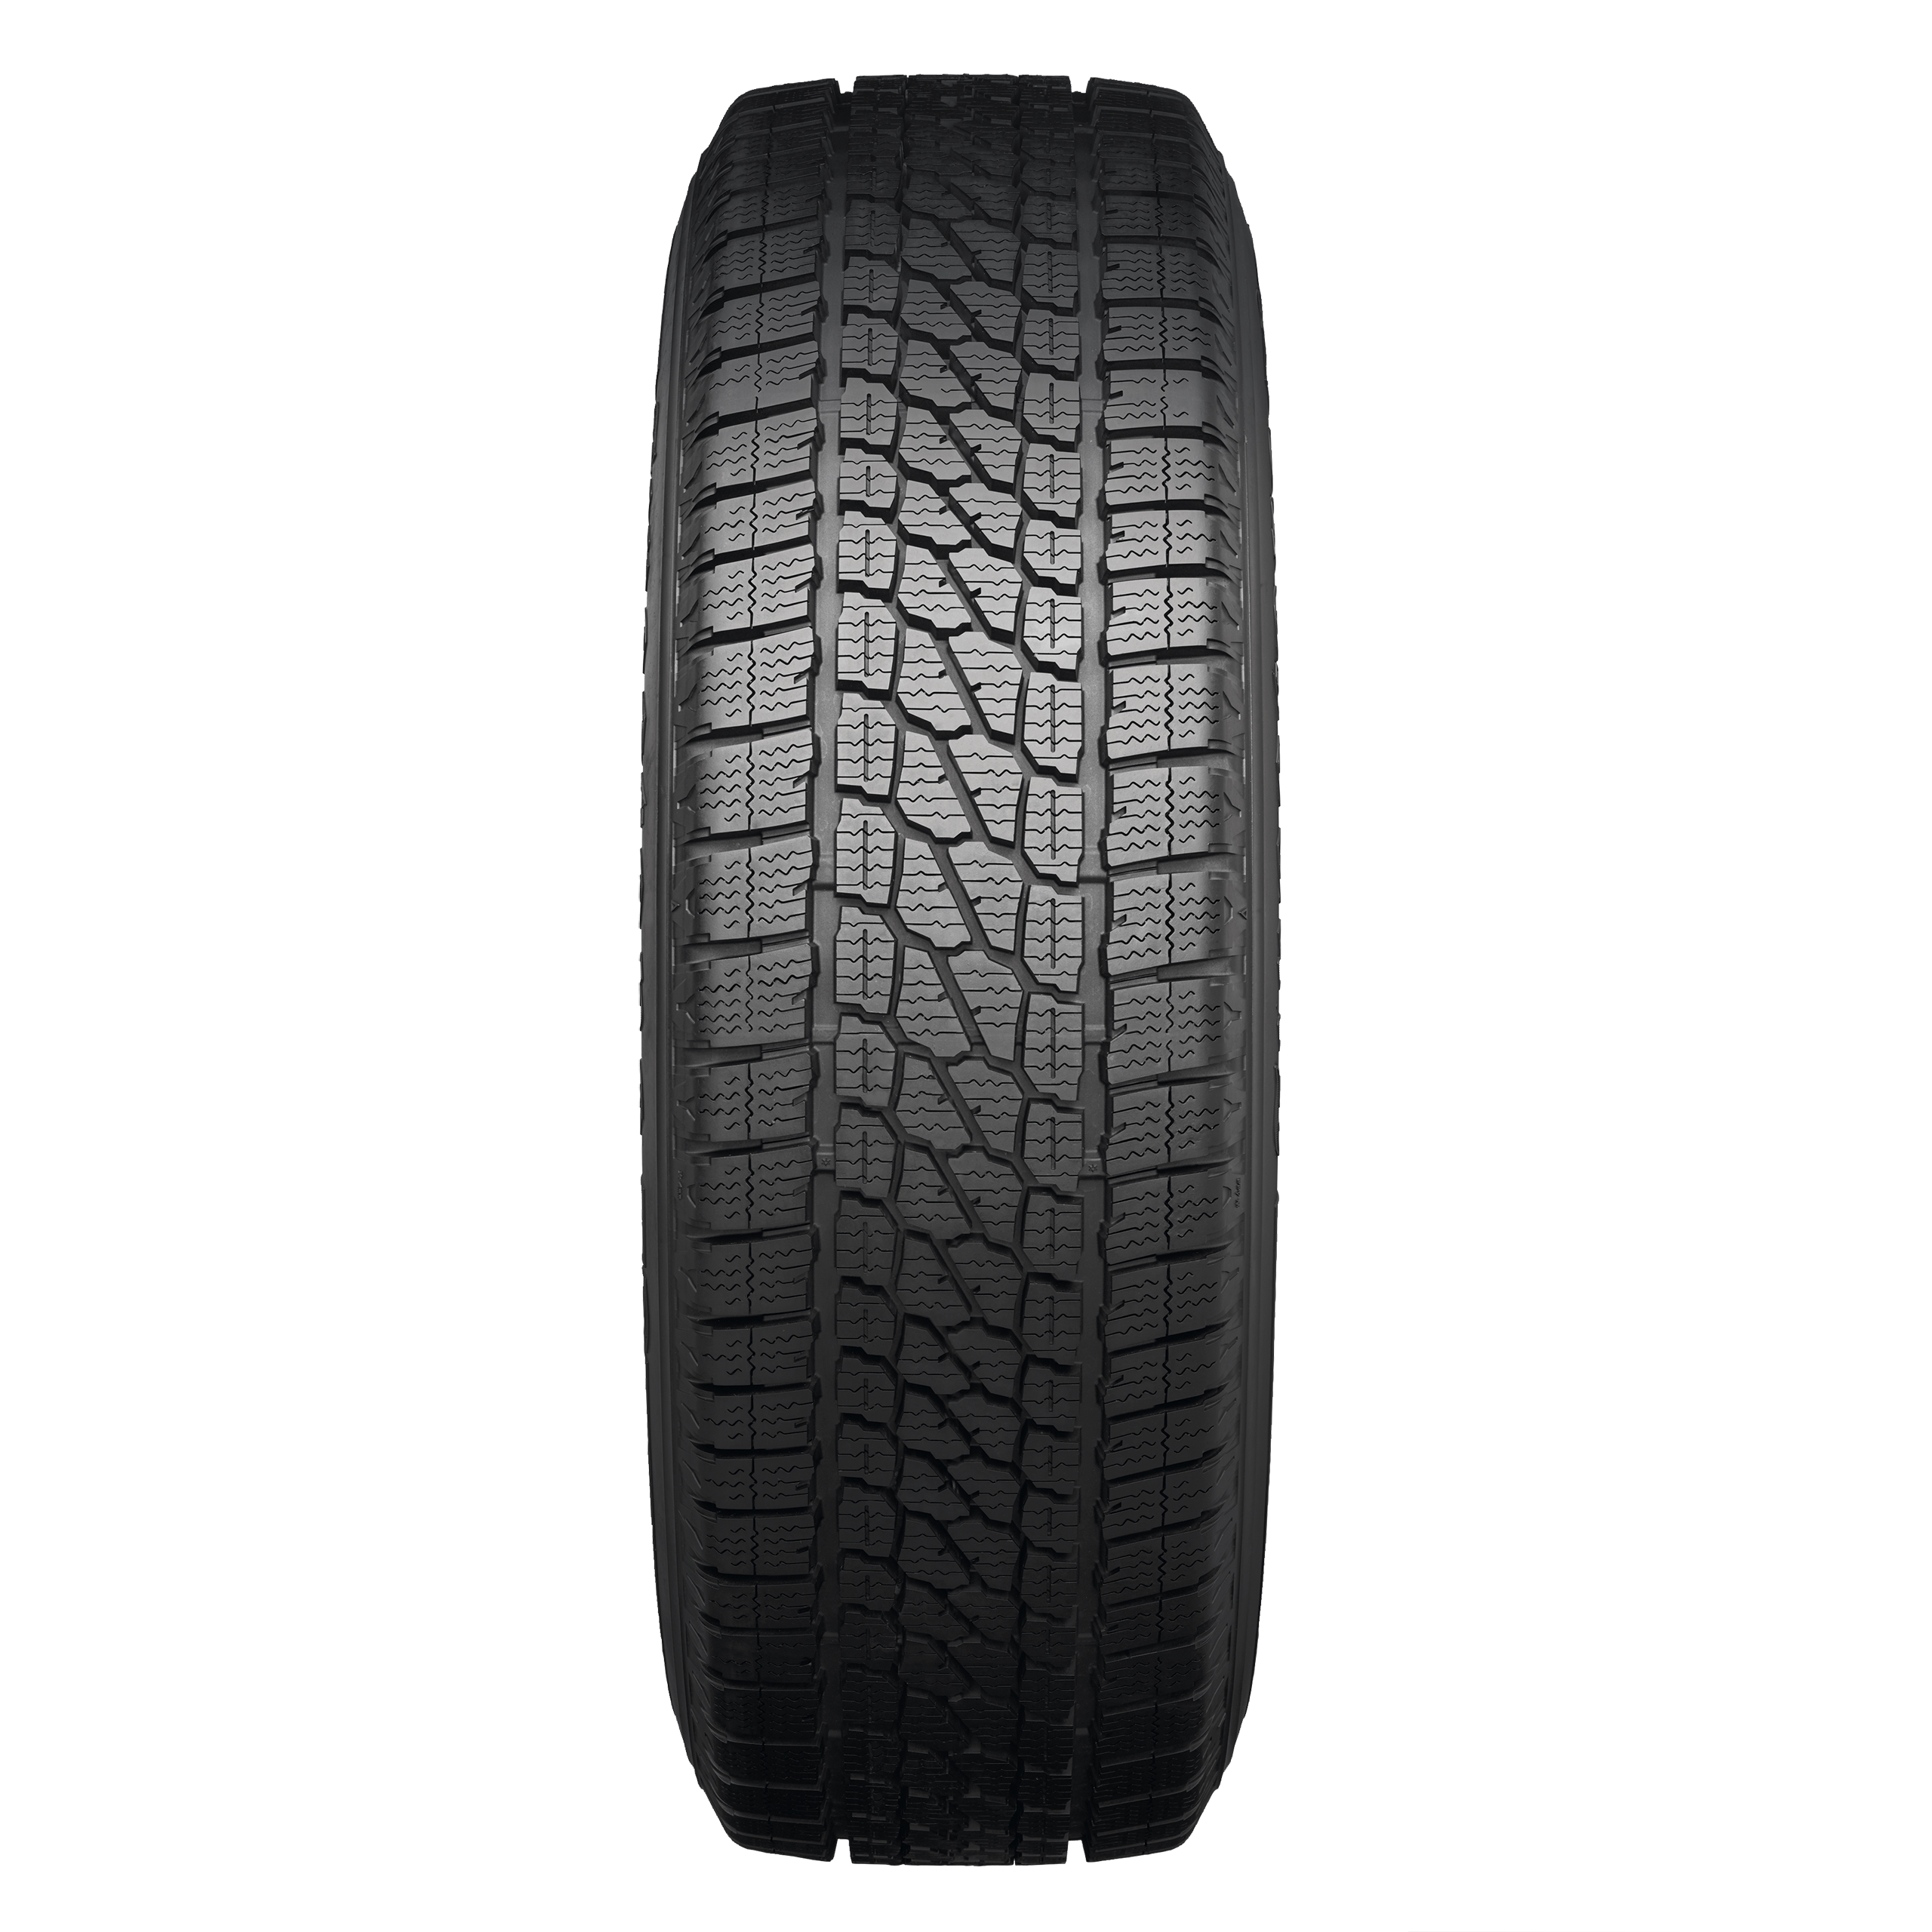 Firestone Vanhawk | What Winter Tyre Independent comparison | 2 tyre